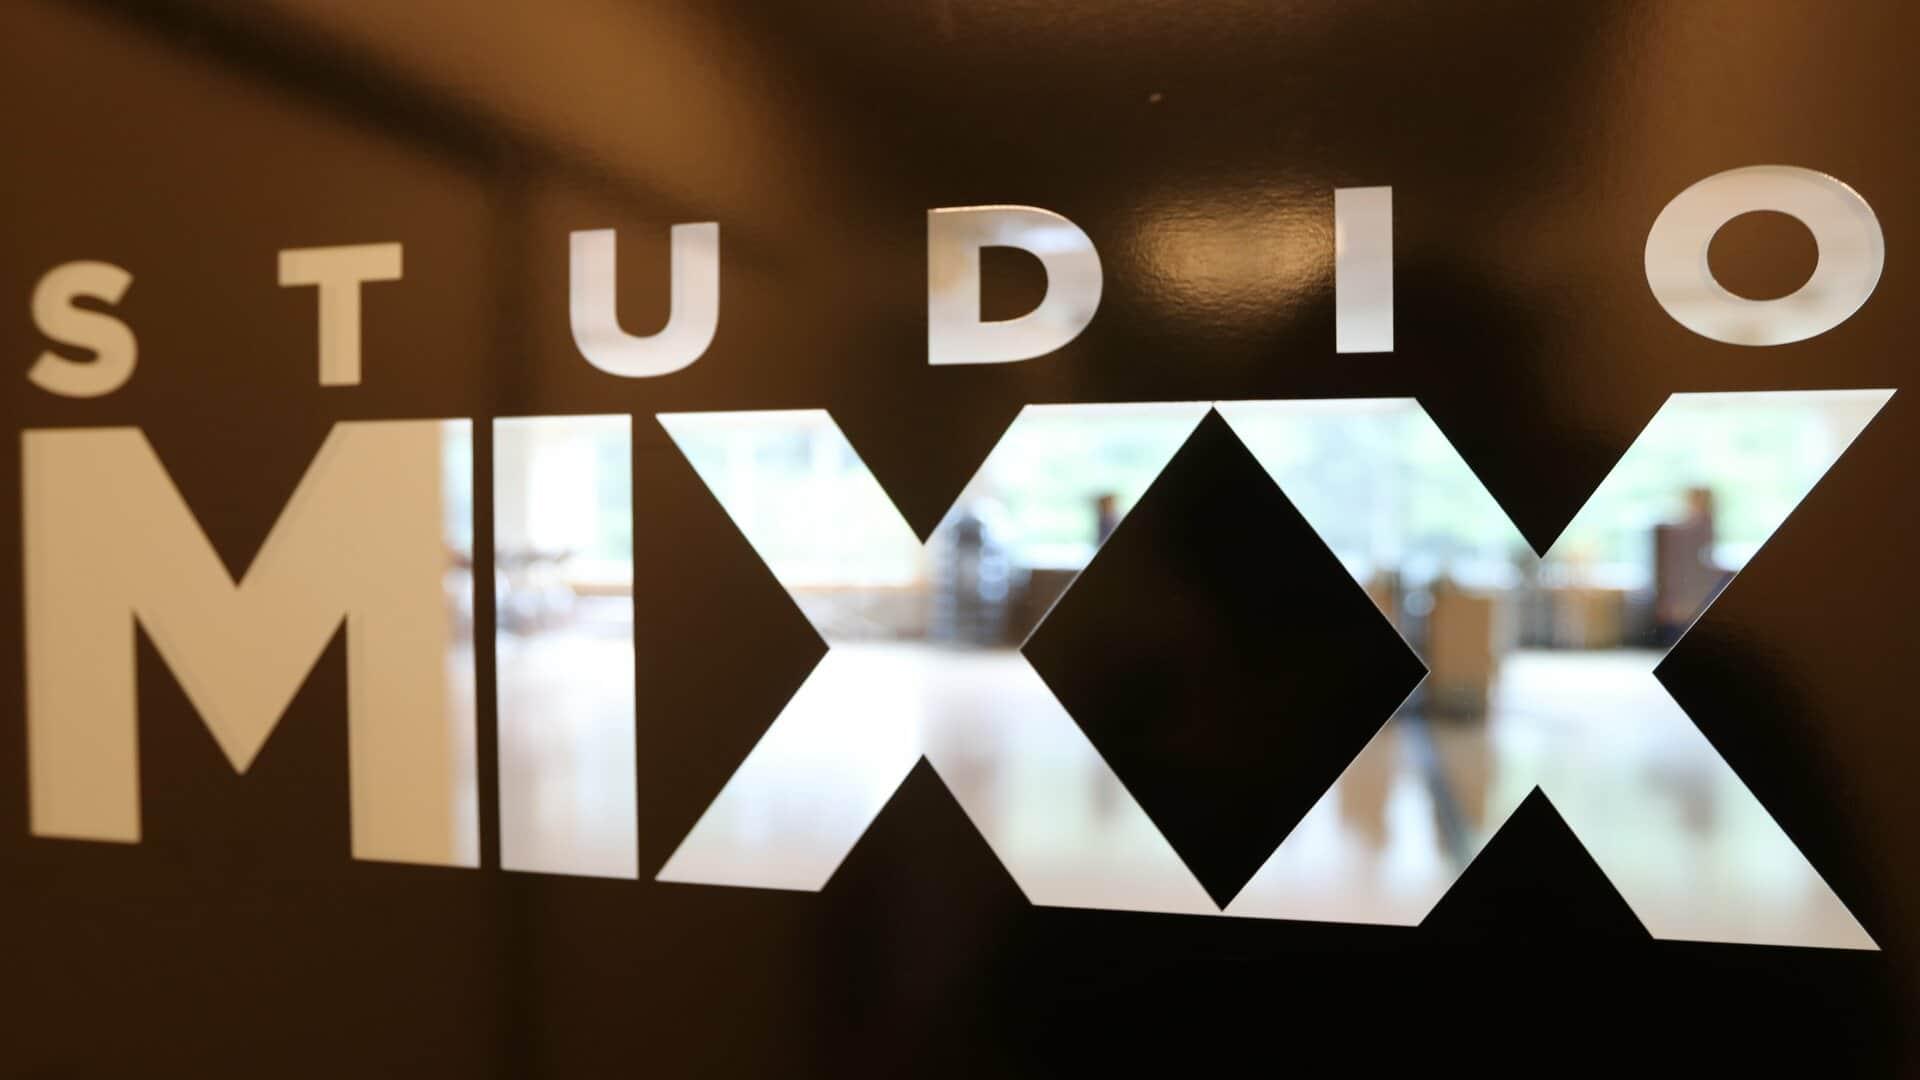 Studio Mixx Door